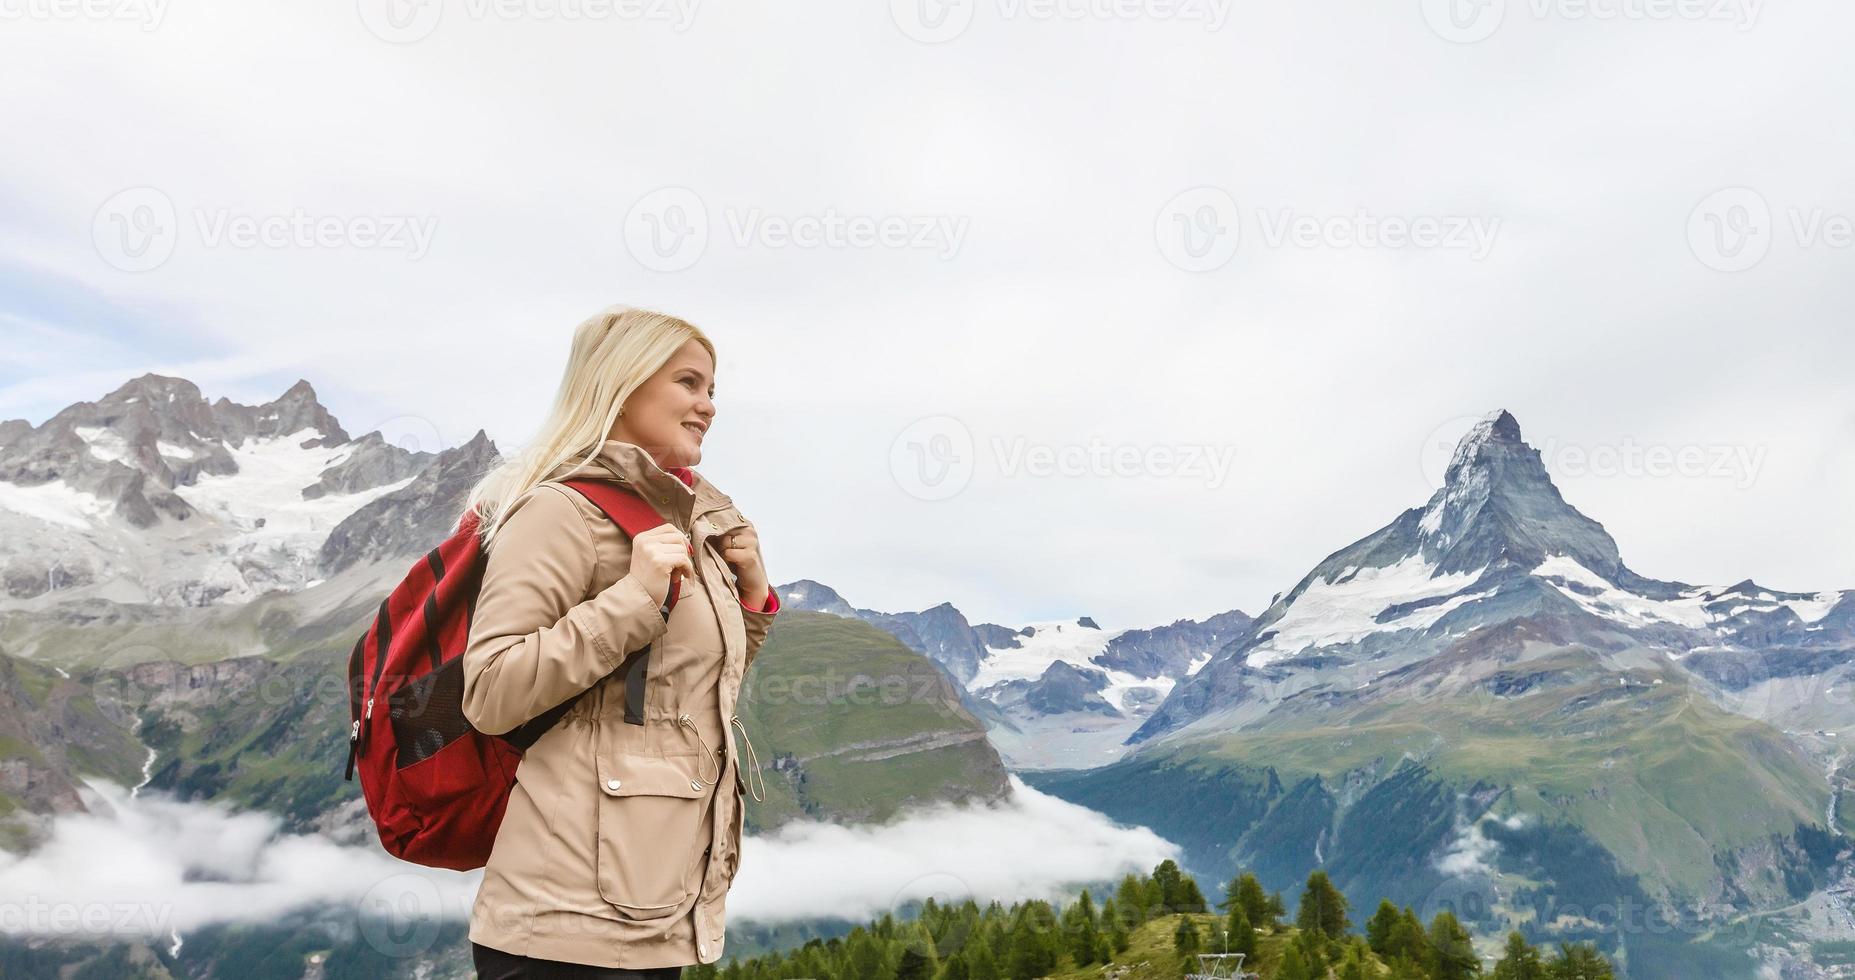 wandern - wandererfrau auf trek mit dem rucksack, der gesunden aktiven lebensstil lebt. wanderermädchen, das auf wanderung in der bergnaturlandschaft in den schweizer alpen, schweiz geht. foto